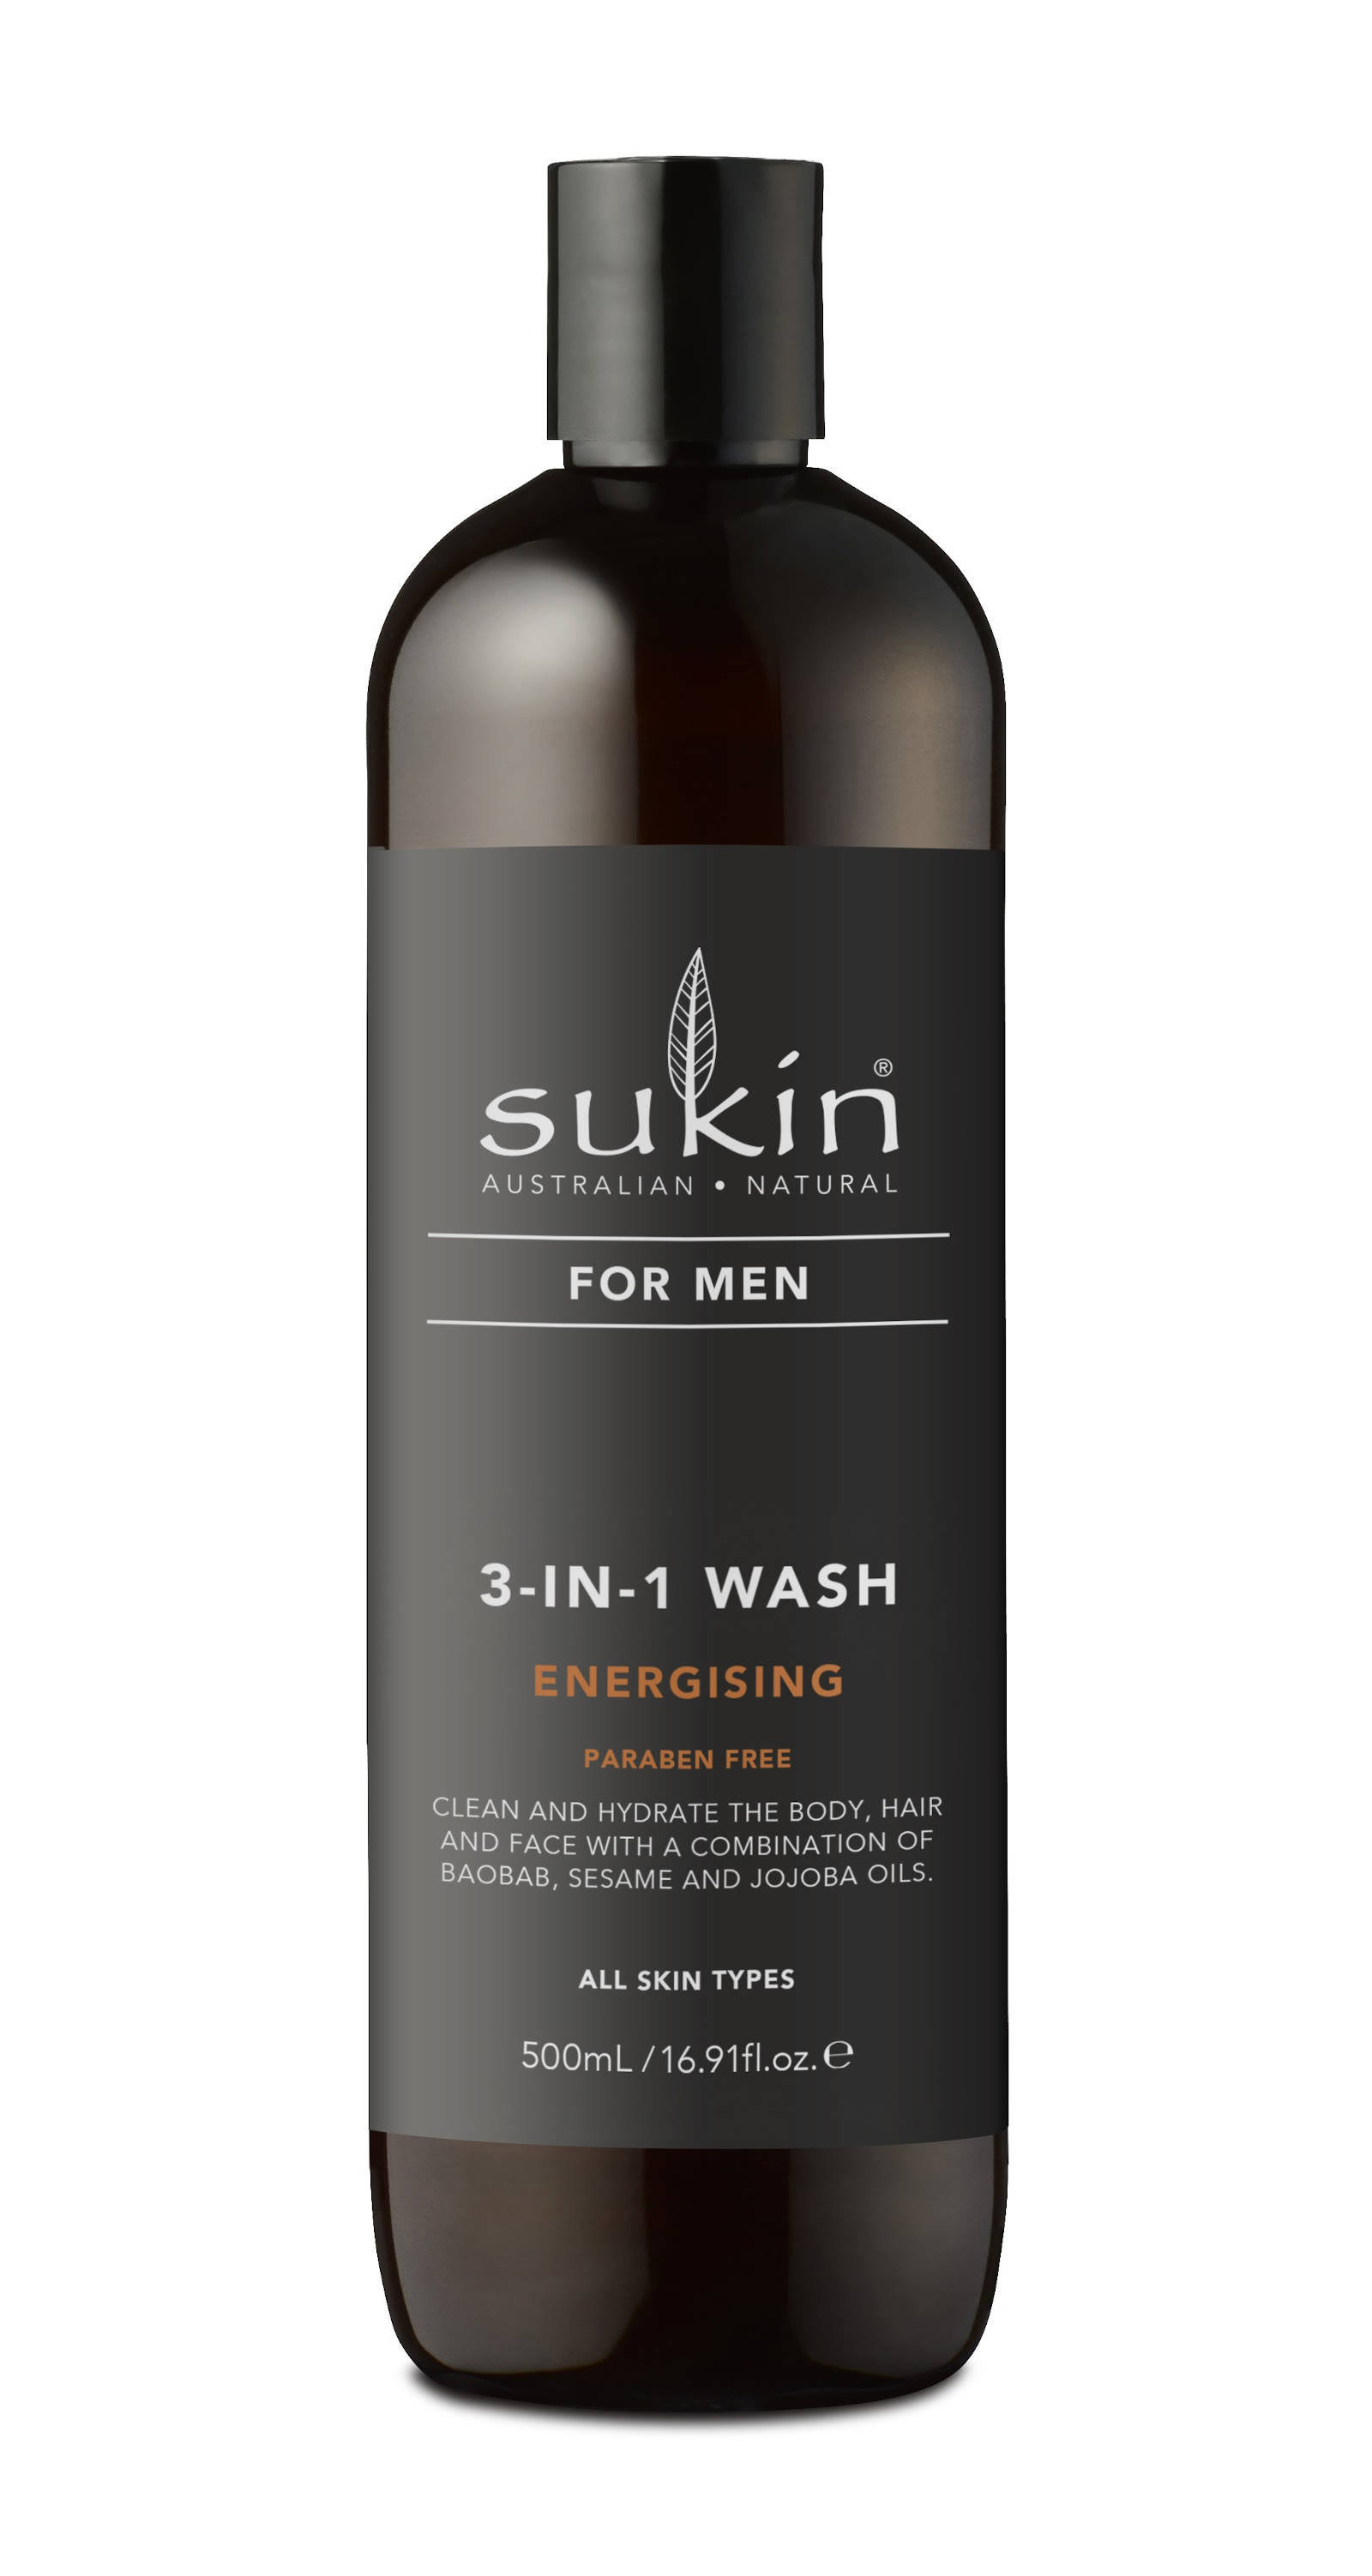 Sukin For Men 3-in-1 Wash Energising 500ml